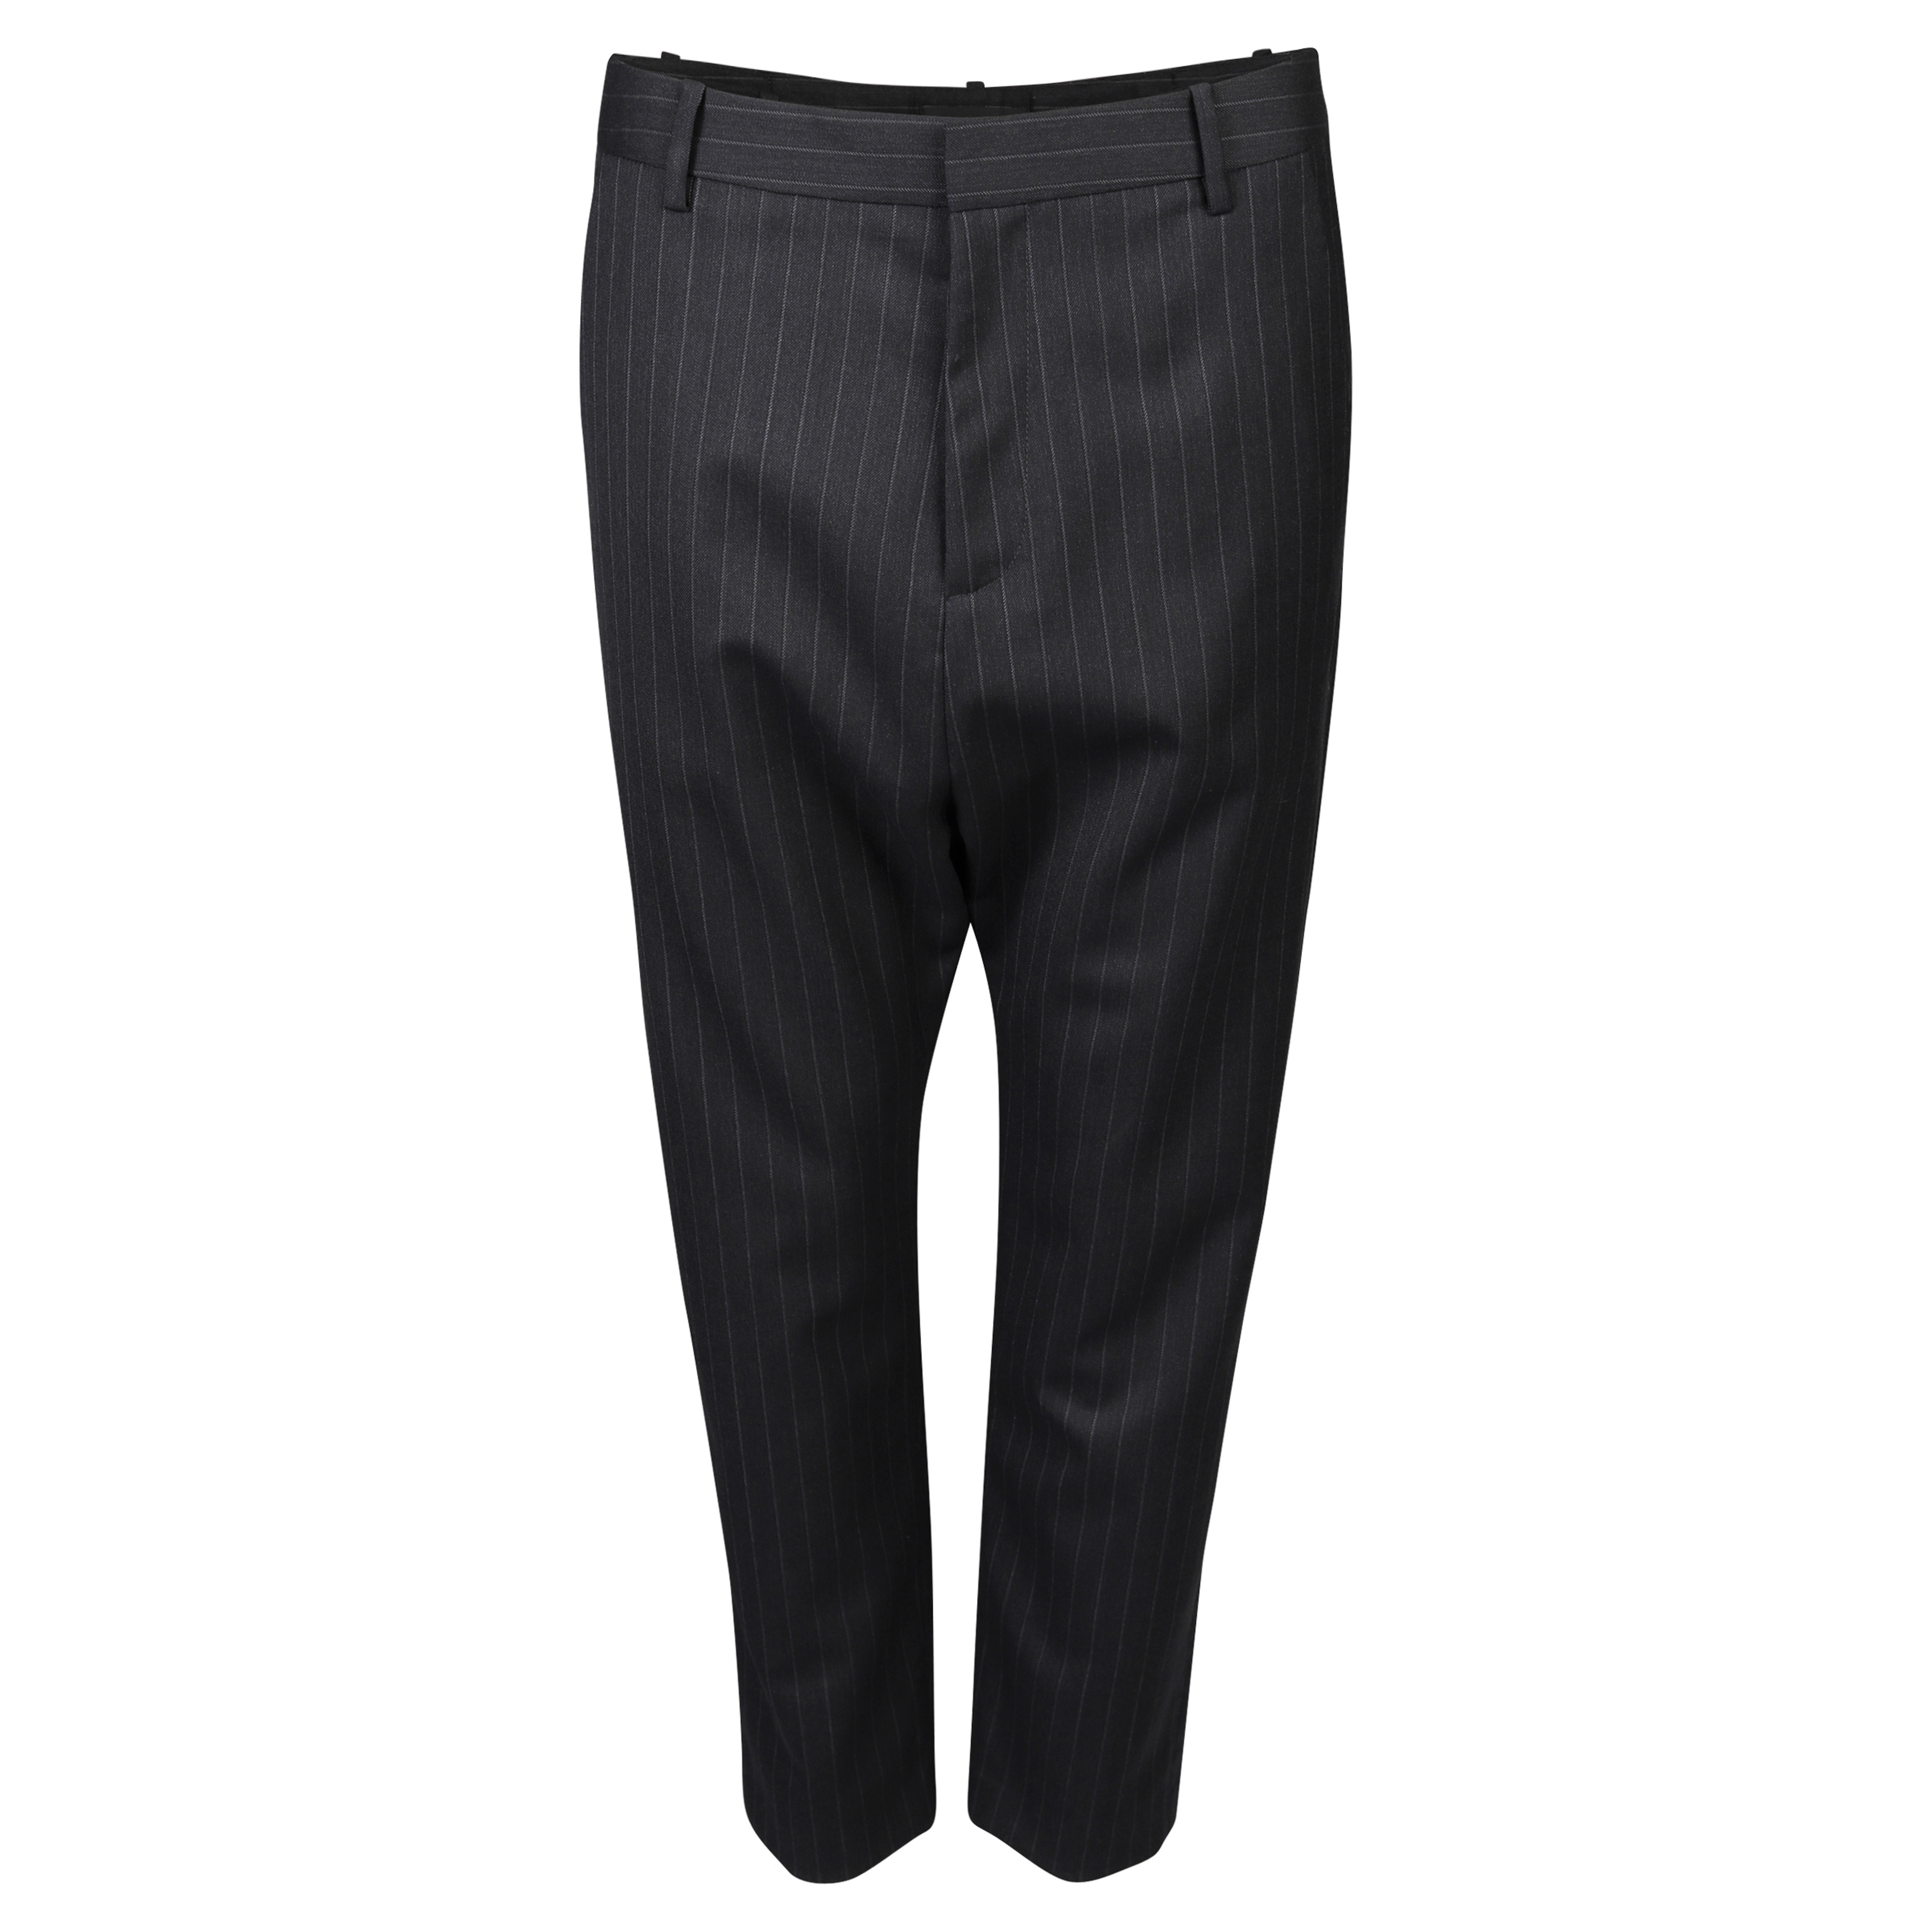 Nili Lotan Paris Wool Pant Charcoal Striped 0/XS